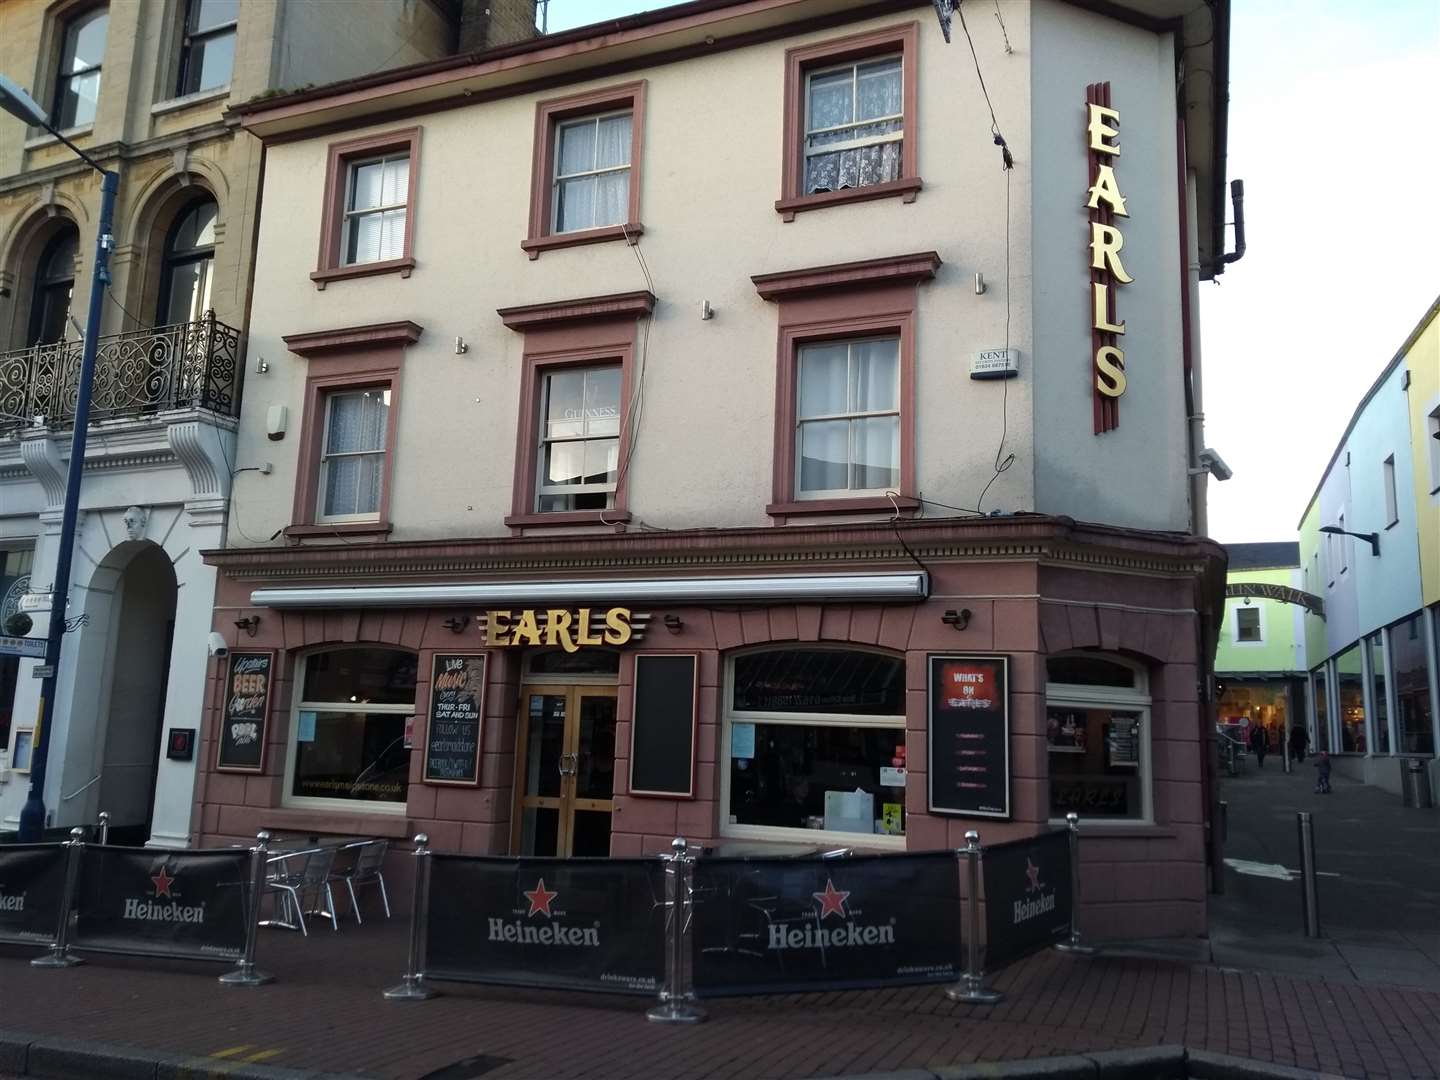 Earls pub in Earl Street, Maidstone, was refurbished by Shepherd Neame in 2018